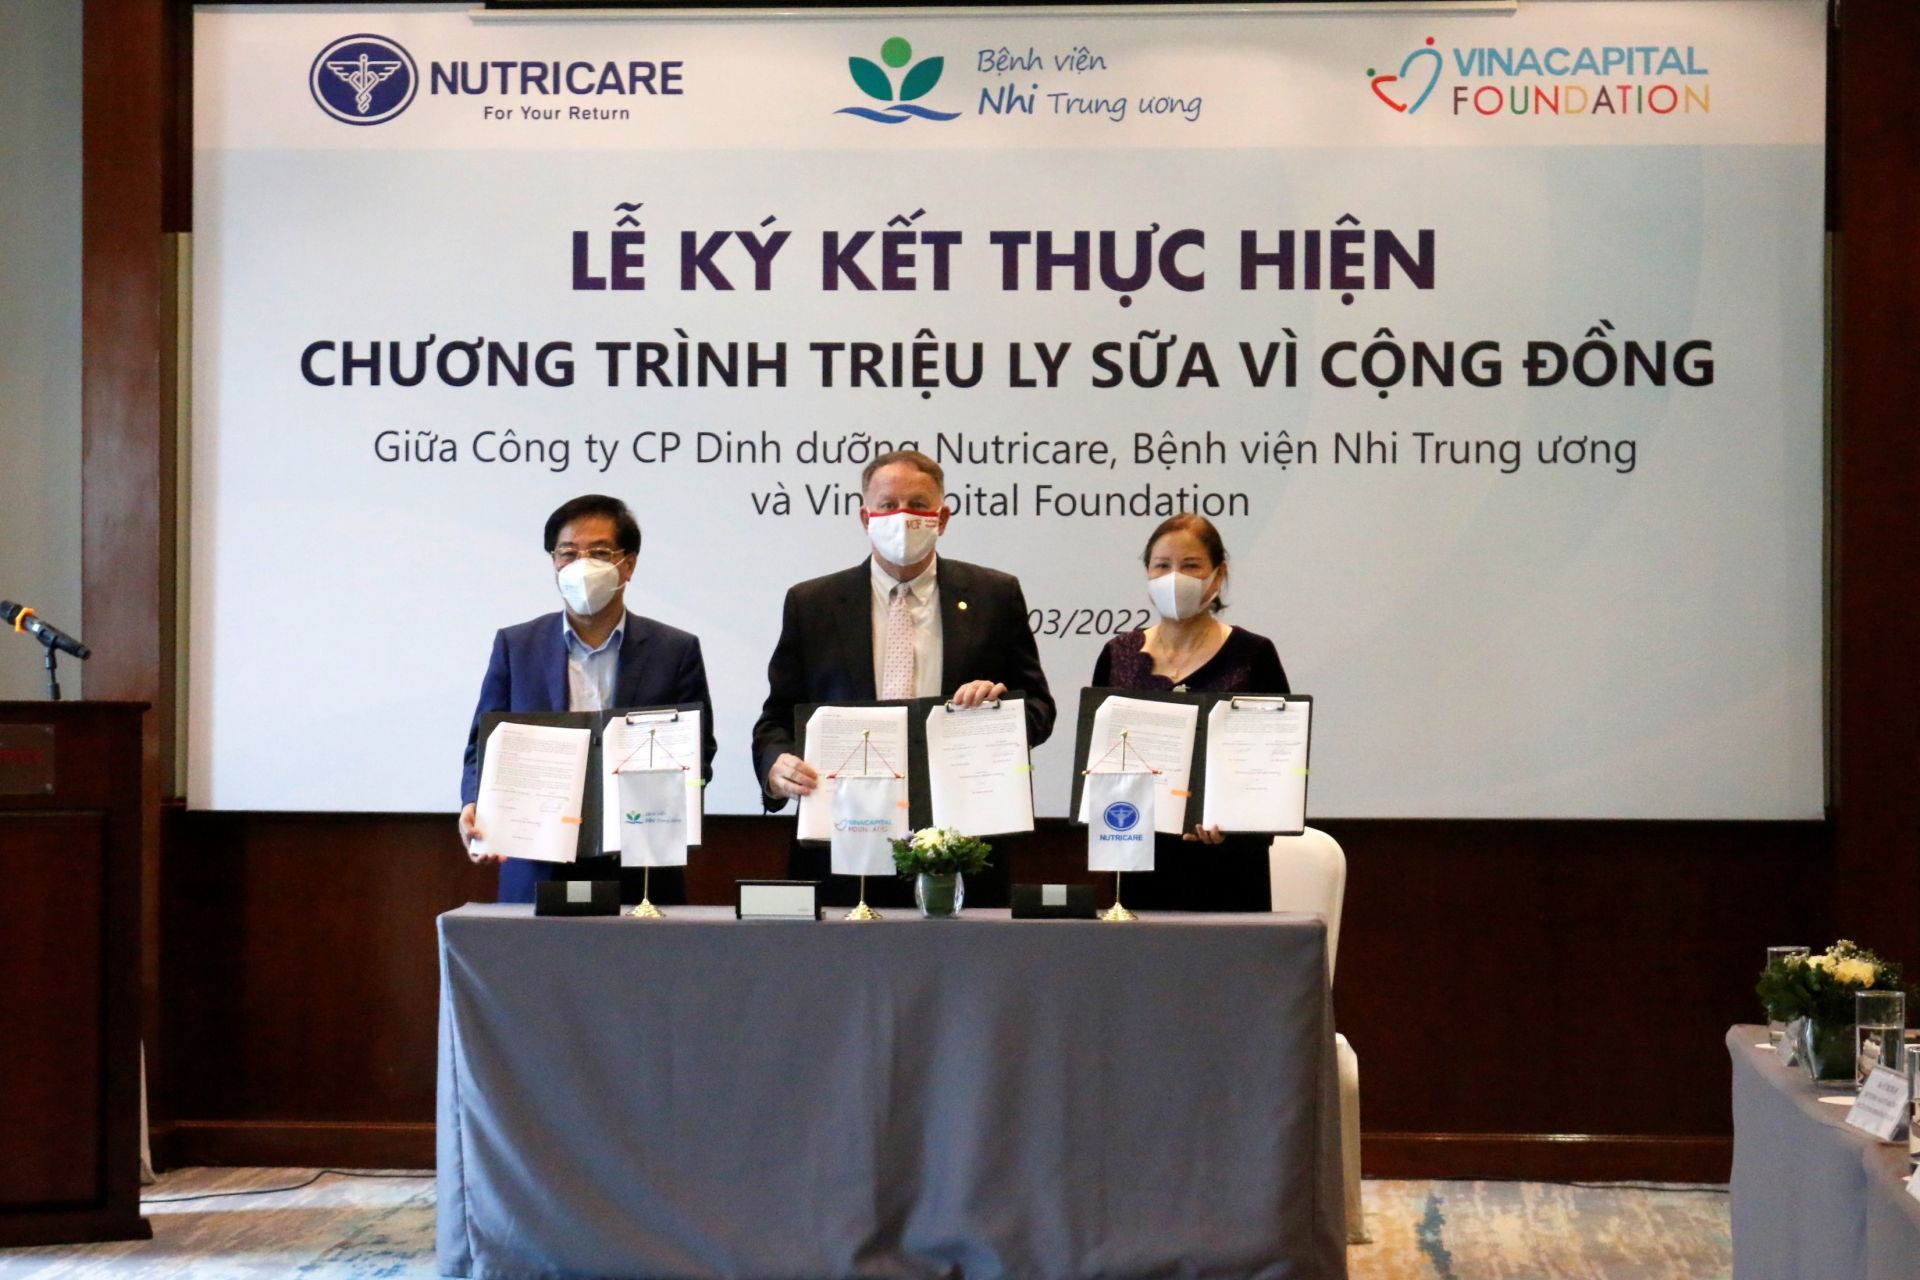 rước đó, vào ngày 24/03, Nutricare và VinaCapital Foundation cũng đã thực hiện lễ ký kết tại Hà Nội với Bệnh viện Nhi Trung ương năm thứ hai.